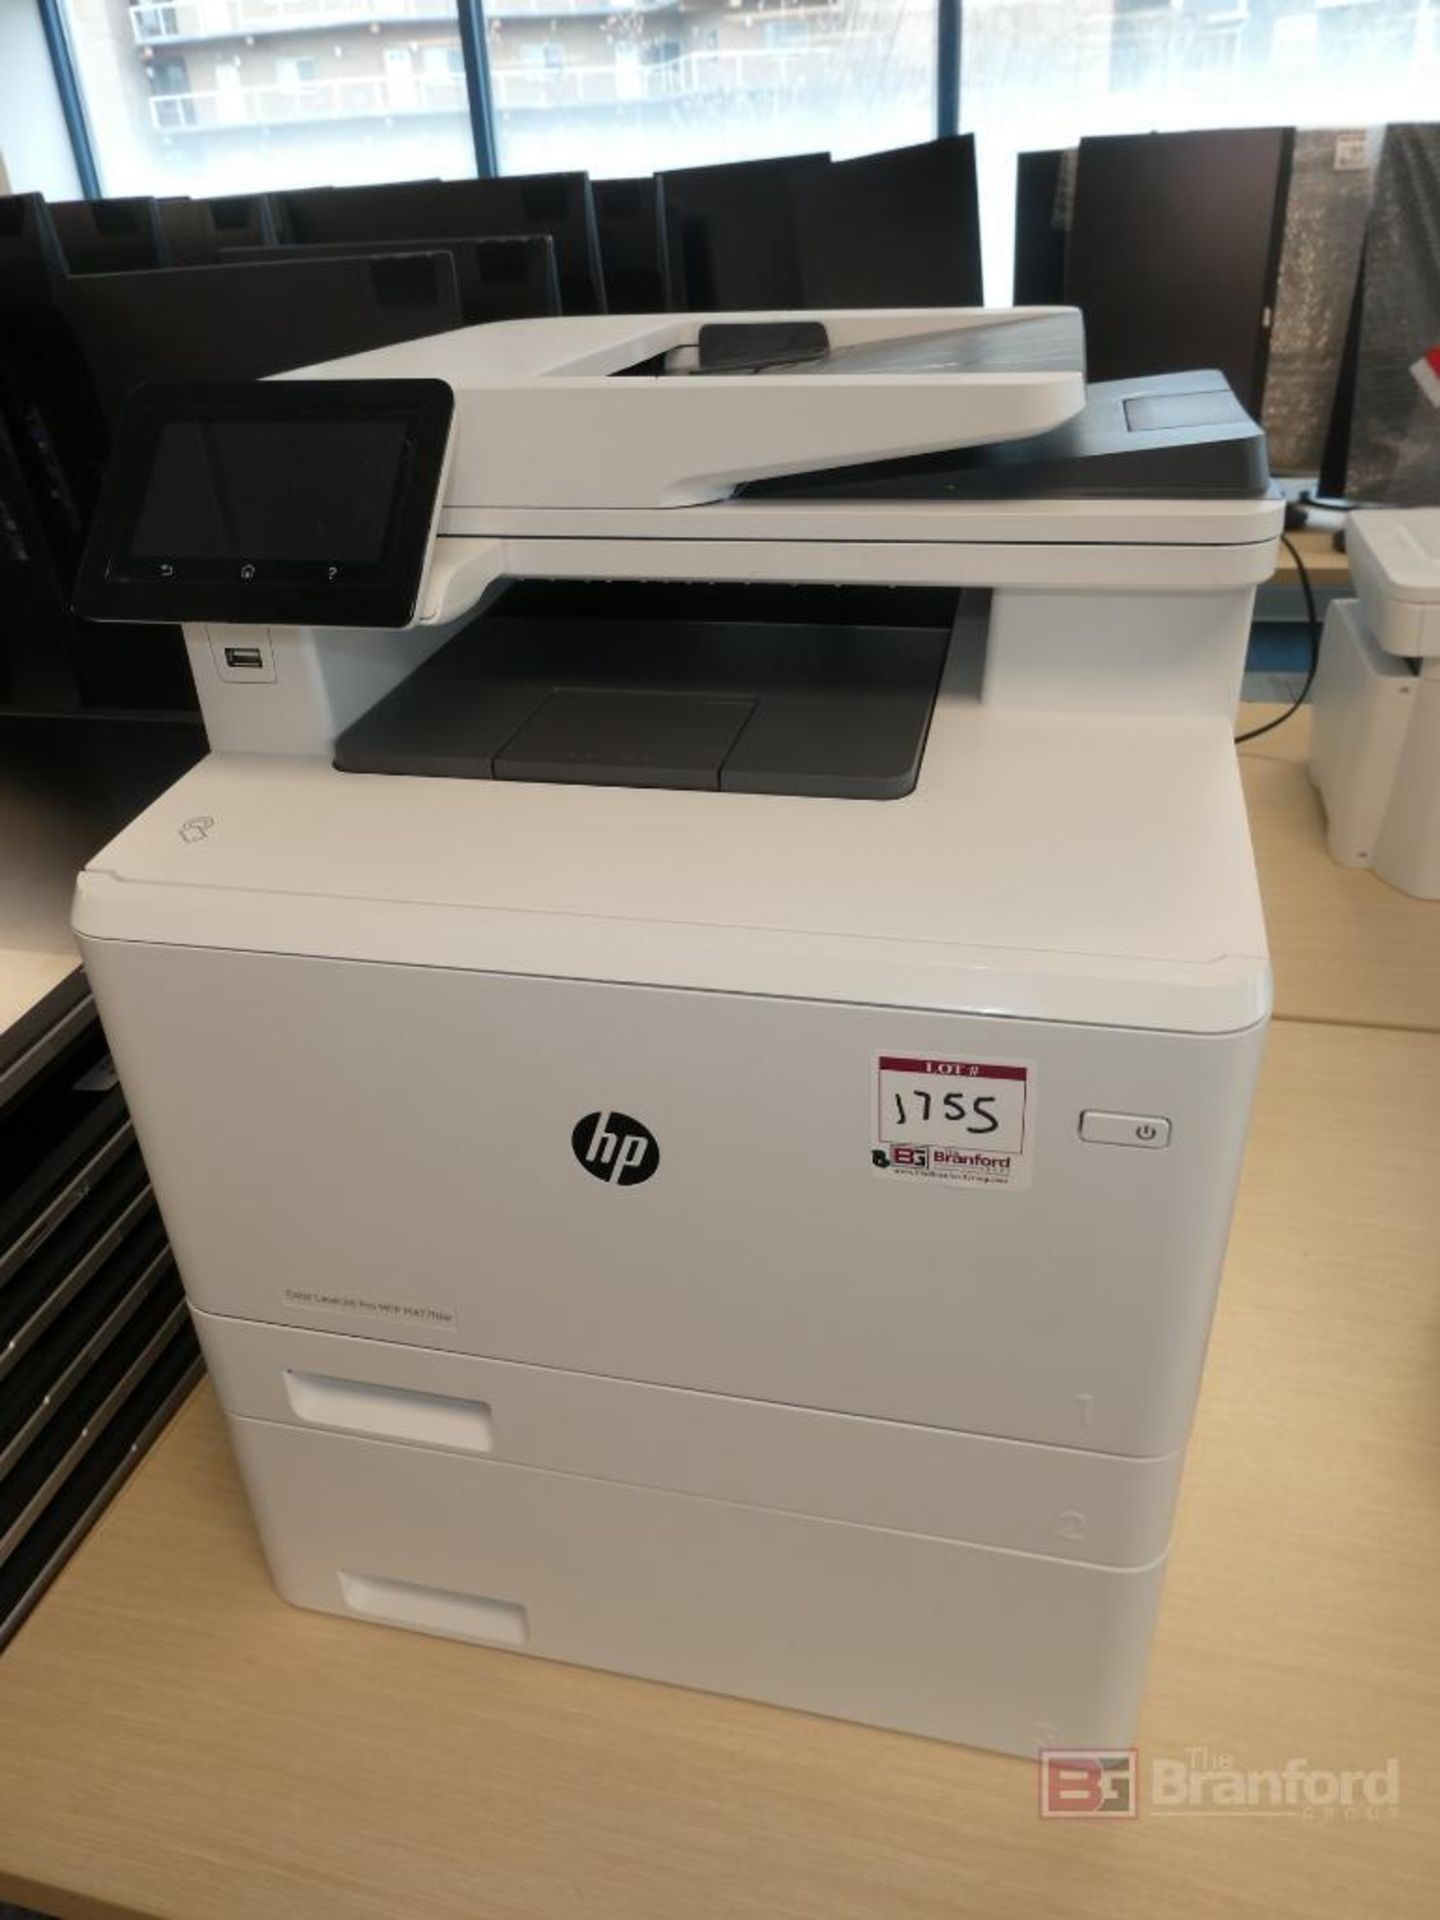 HP Laserjet Pro MFP M477fdm, Color Laser Printer